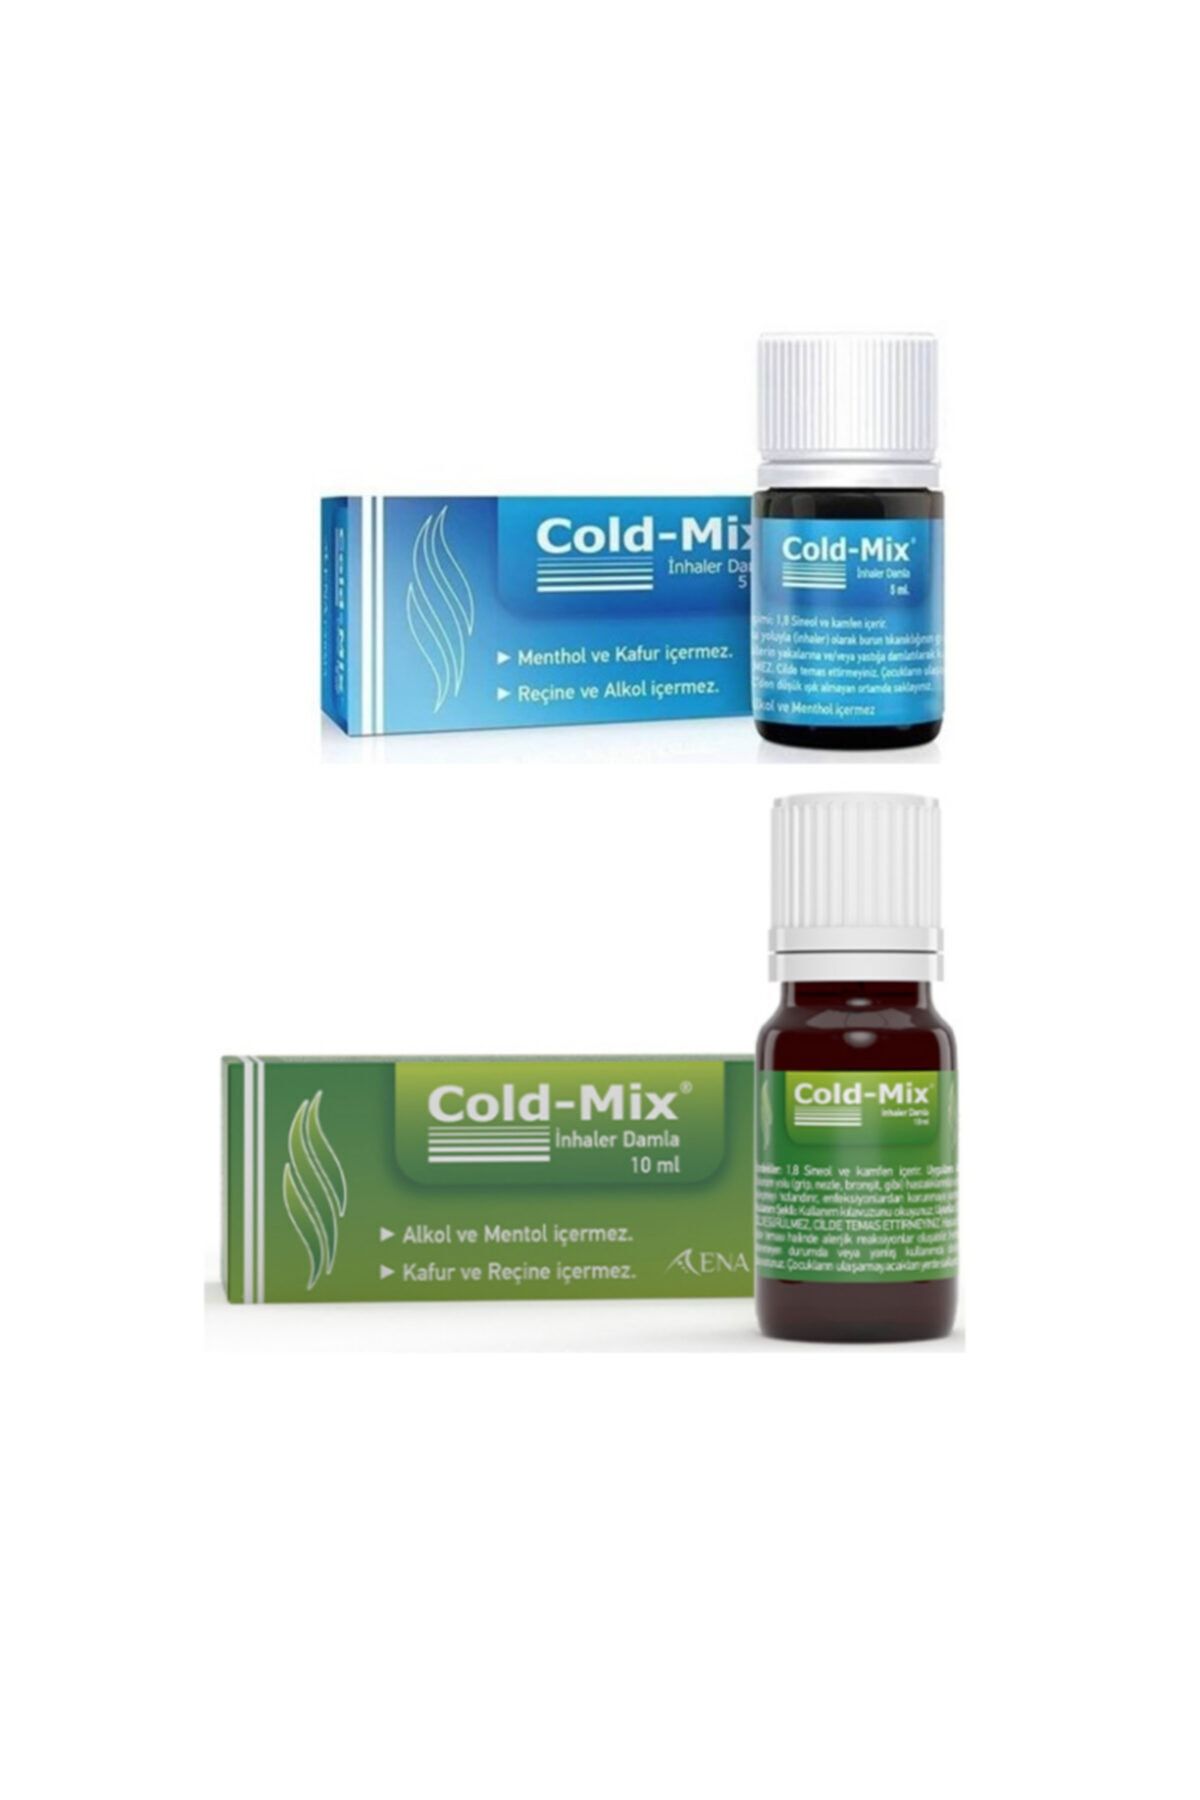 Cold-Mix Burun Tıkanıklığı İçin Rahatlatıcı Damla 10 ml + 5 ml